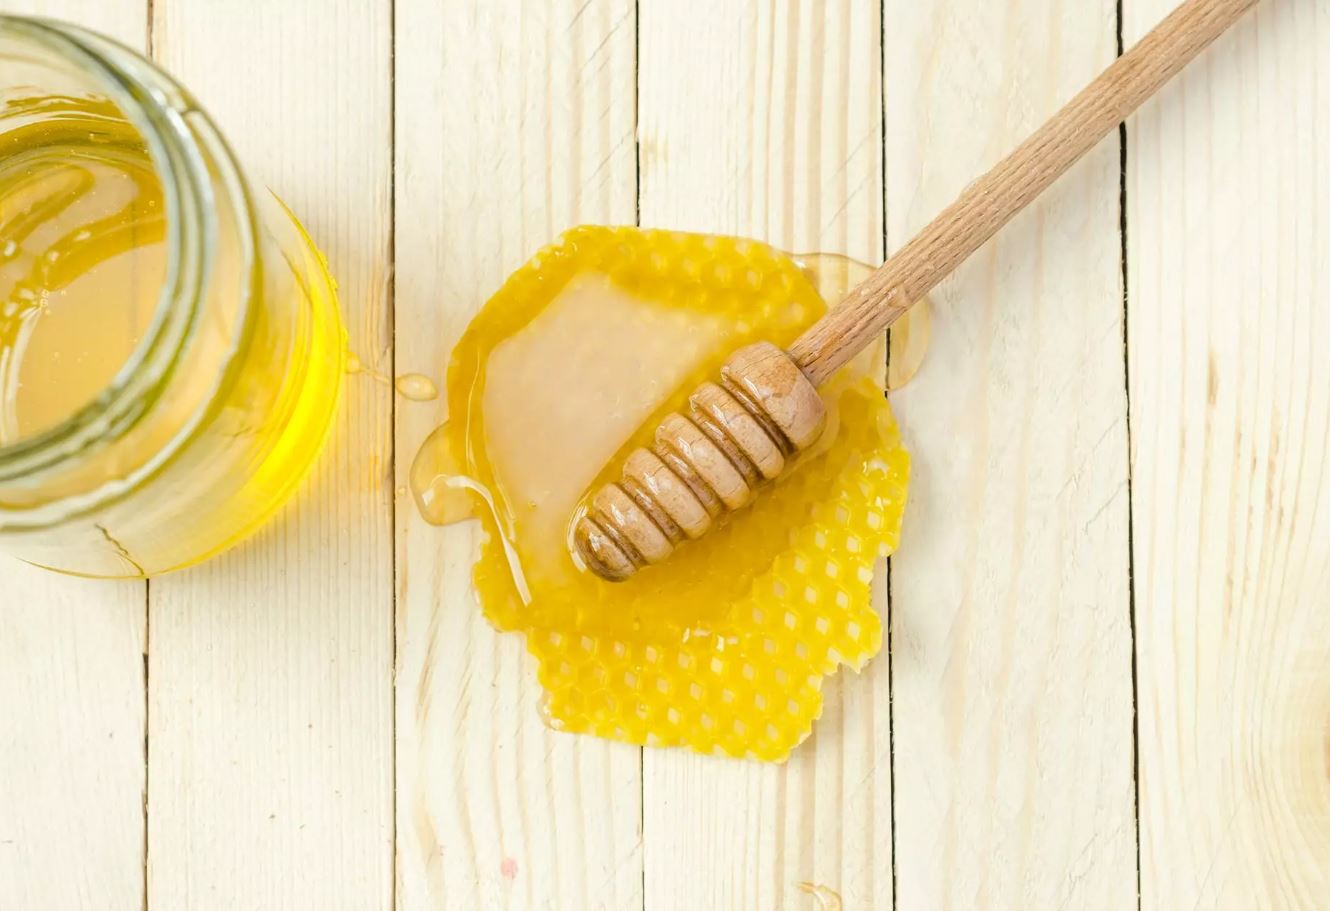 عسل کنار طبیعی ارگانیک و ارزان قیمت